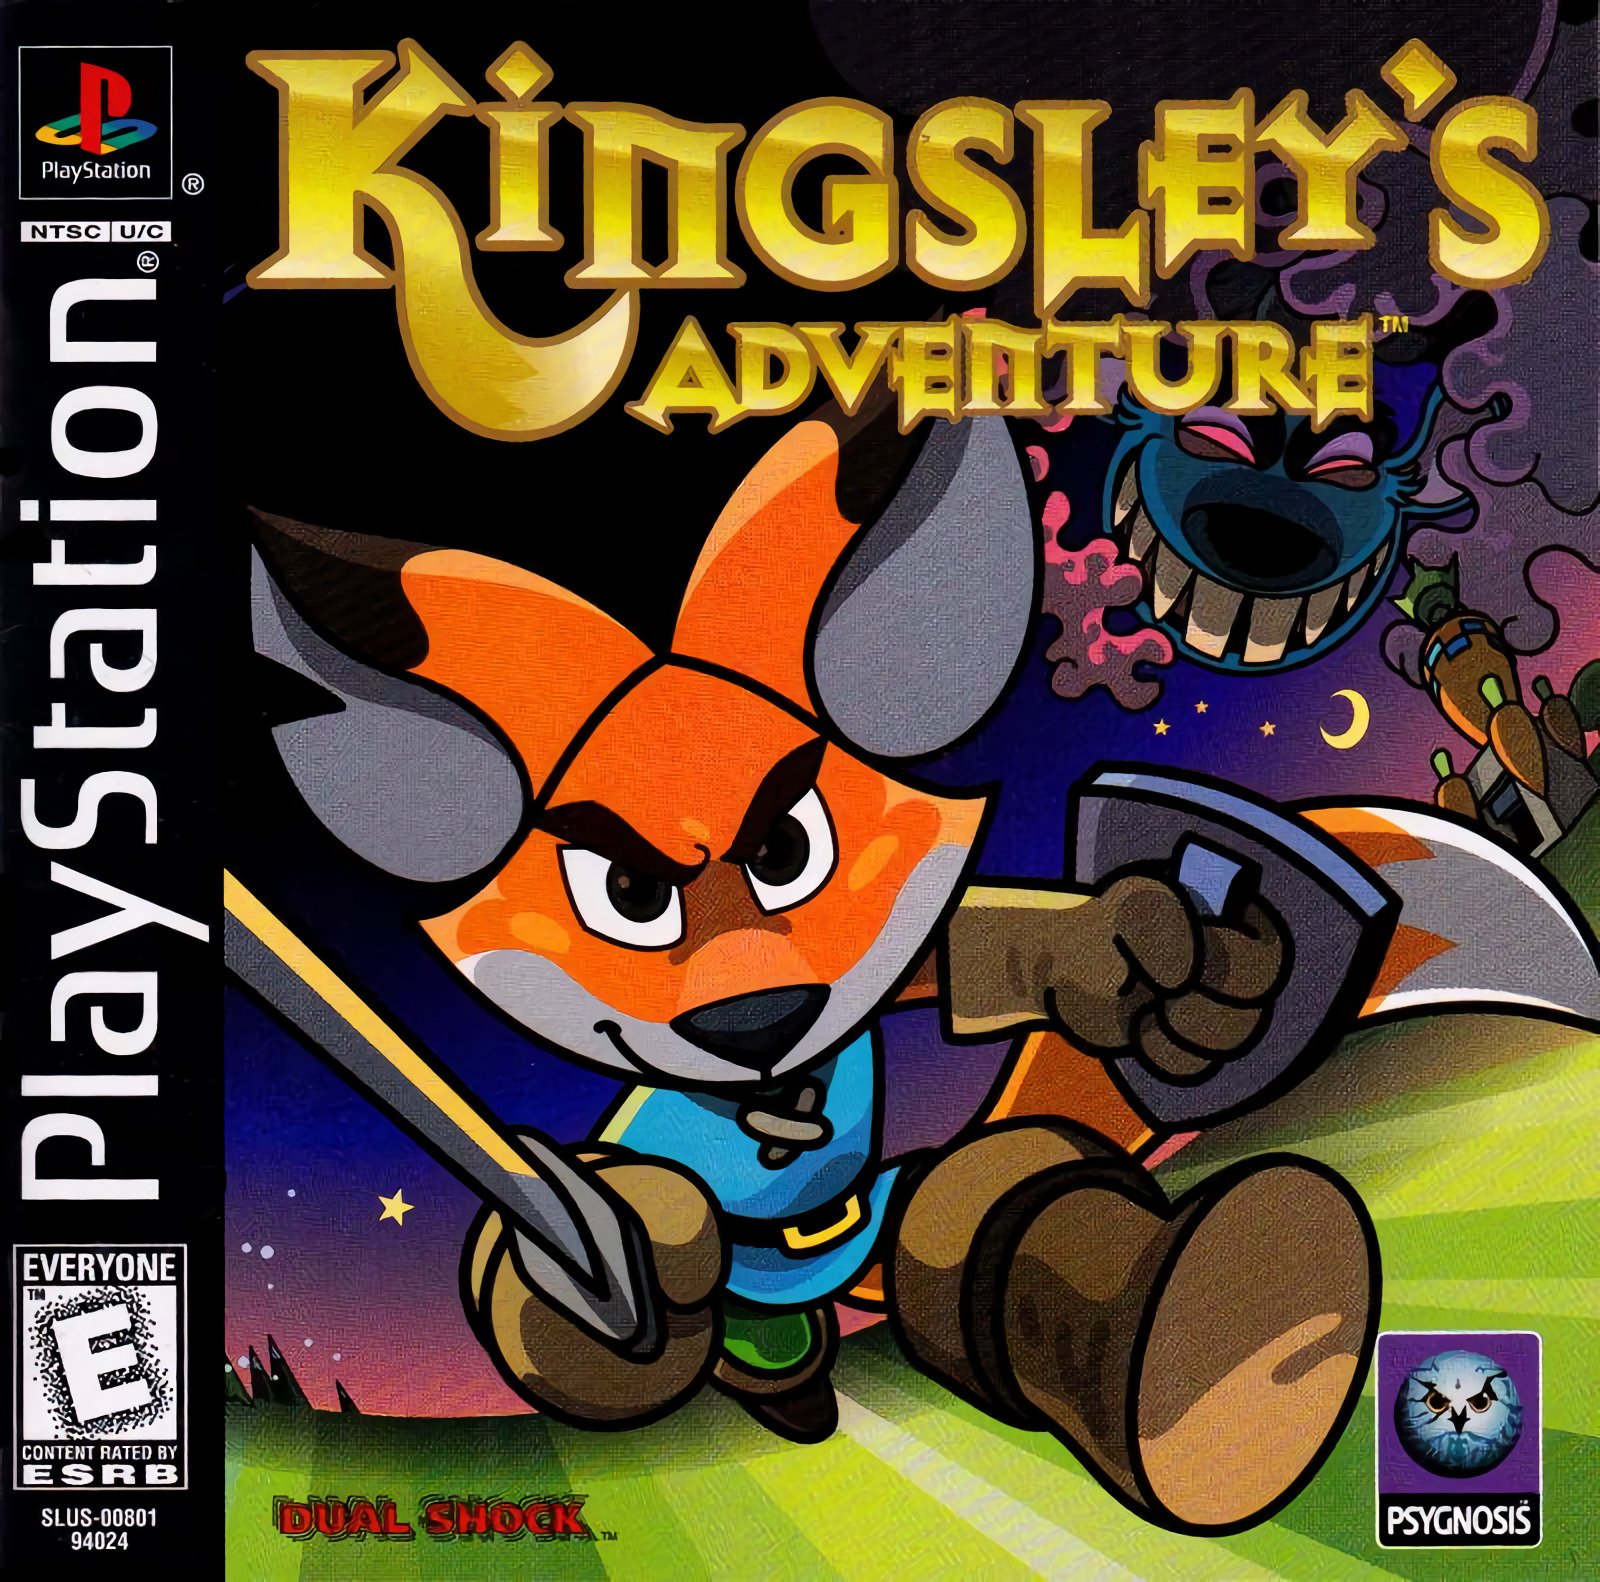 Kingsley's Adventure